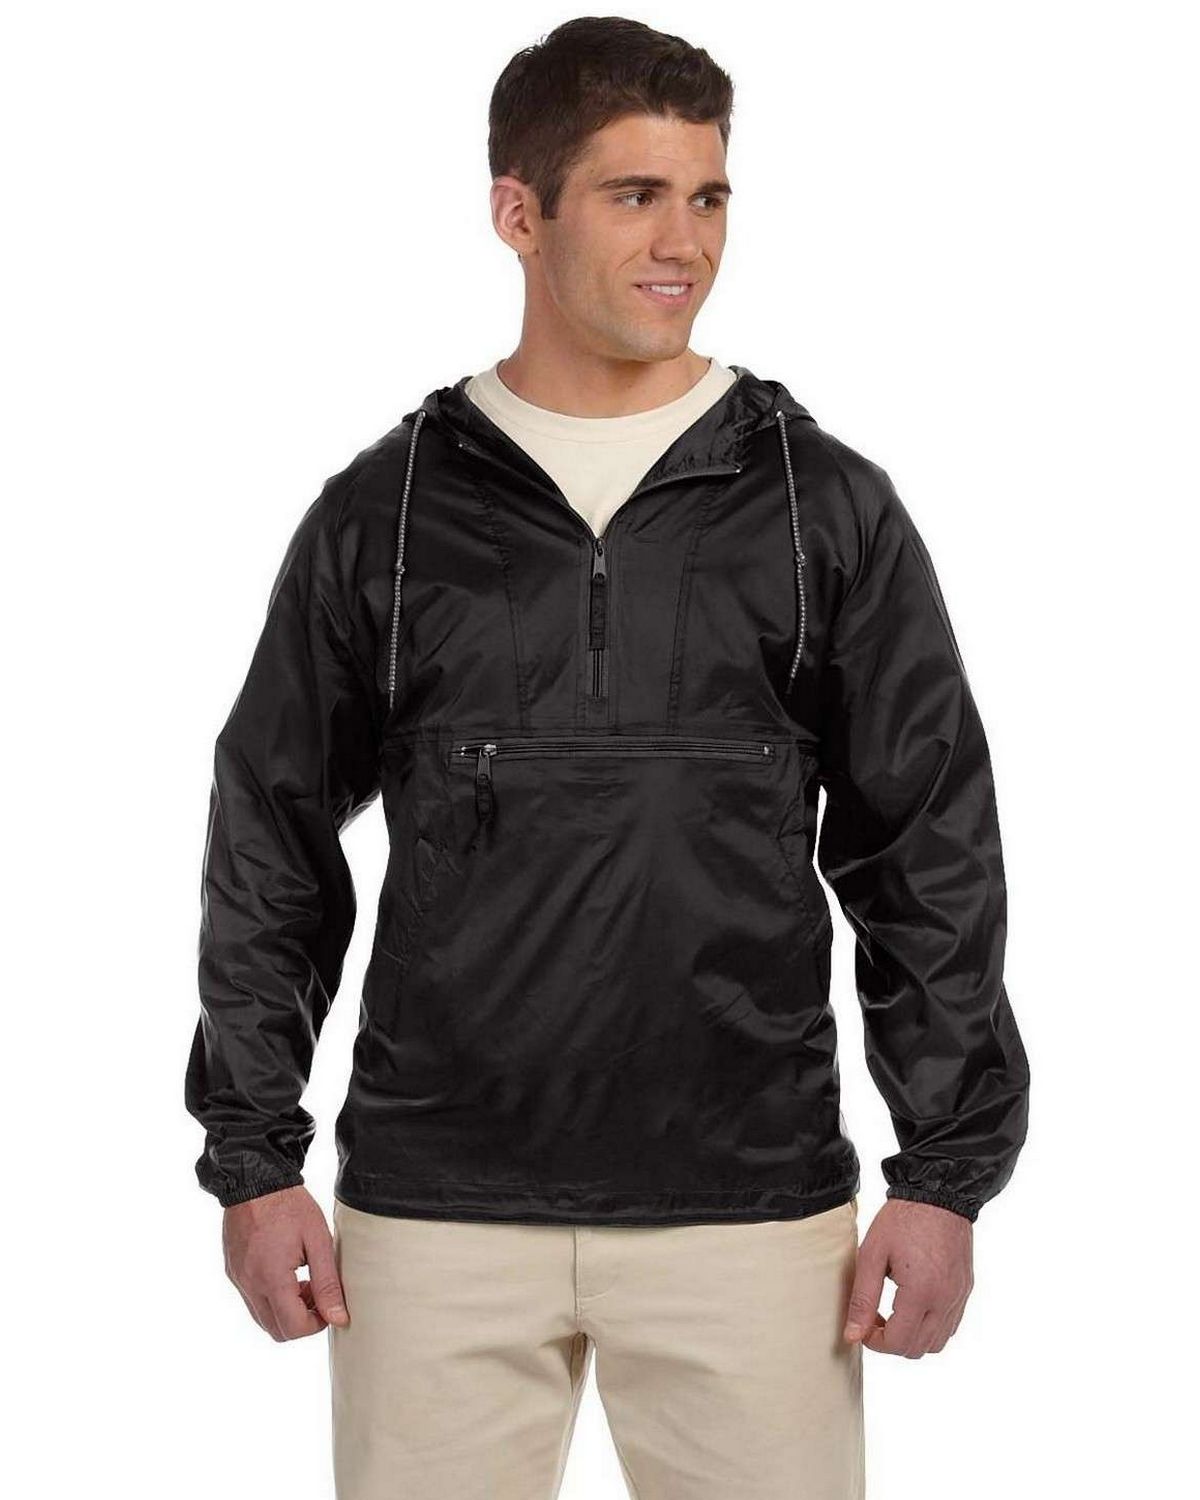 Tri-Mountain 8090 Men's Nylon jacket with fleece lining